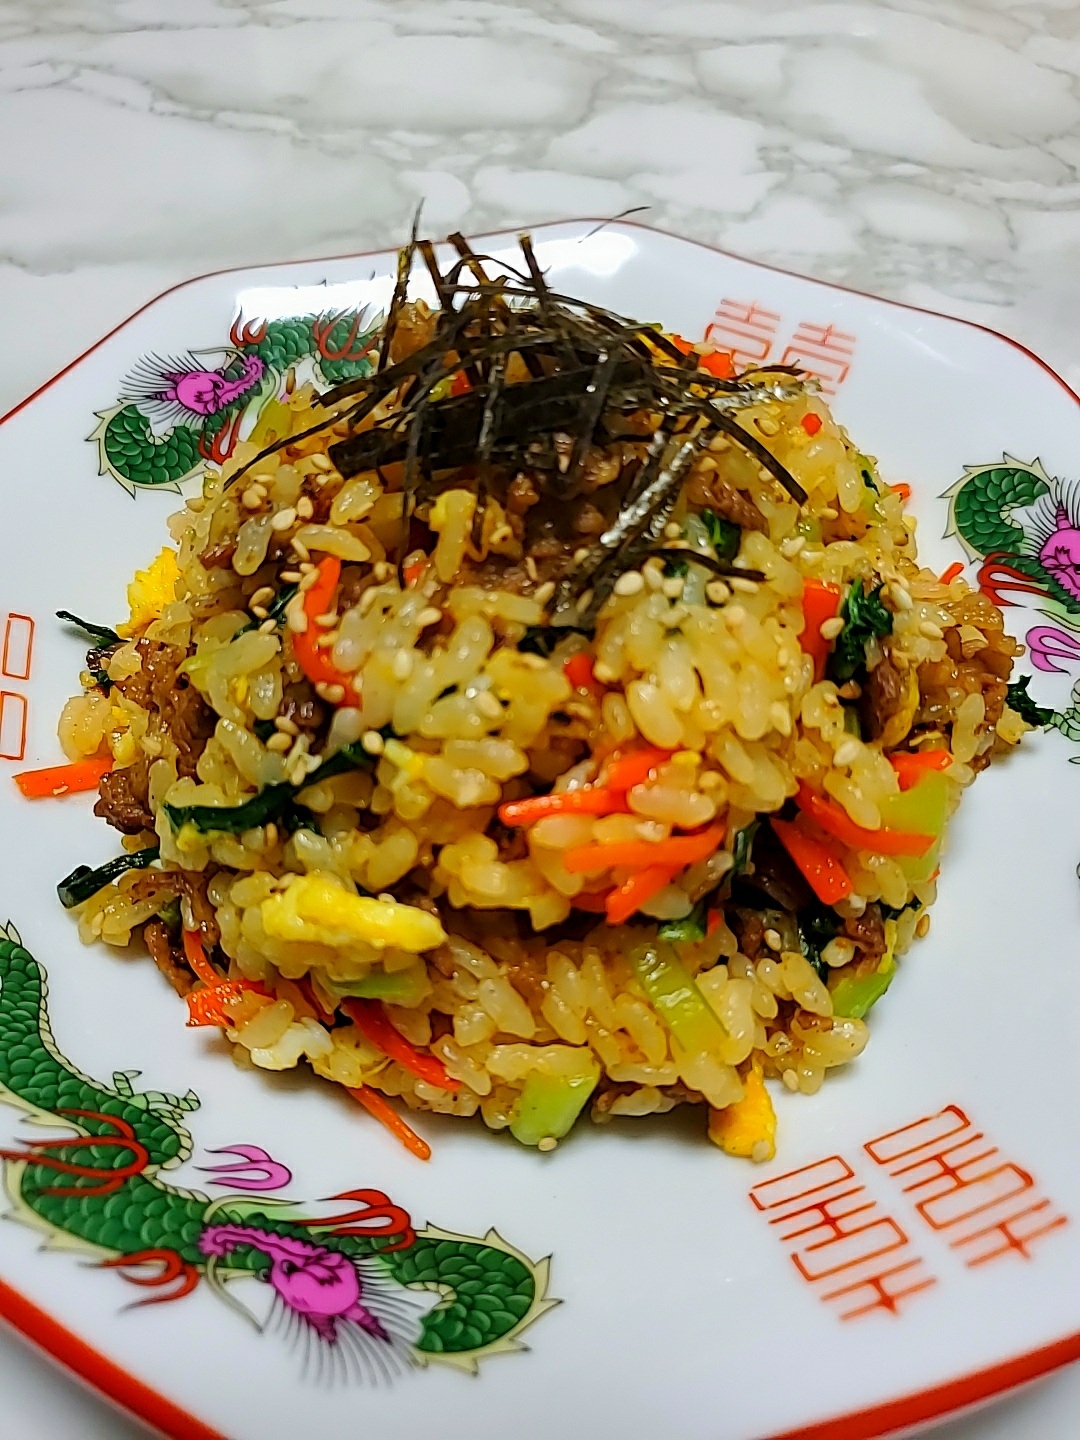 牛肉と小松菜のピビンバ炒飯